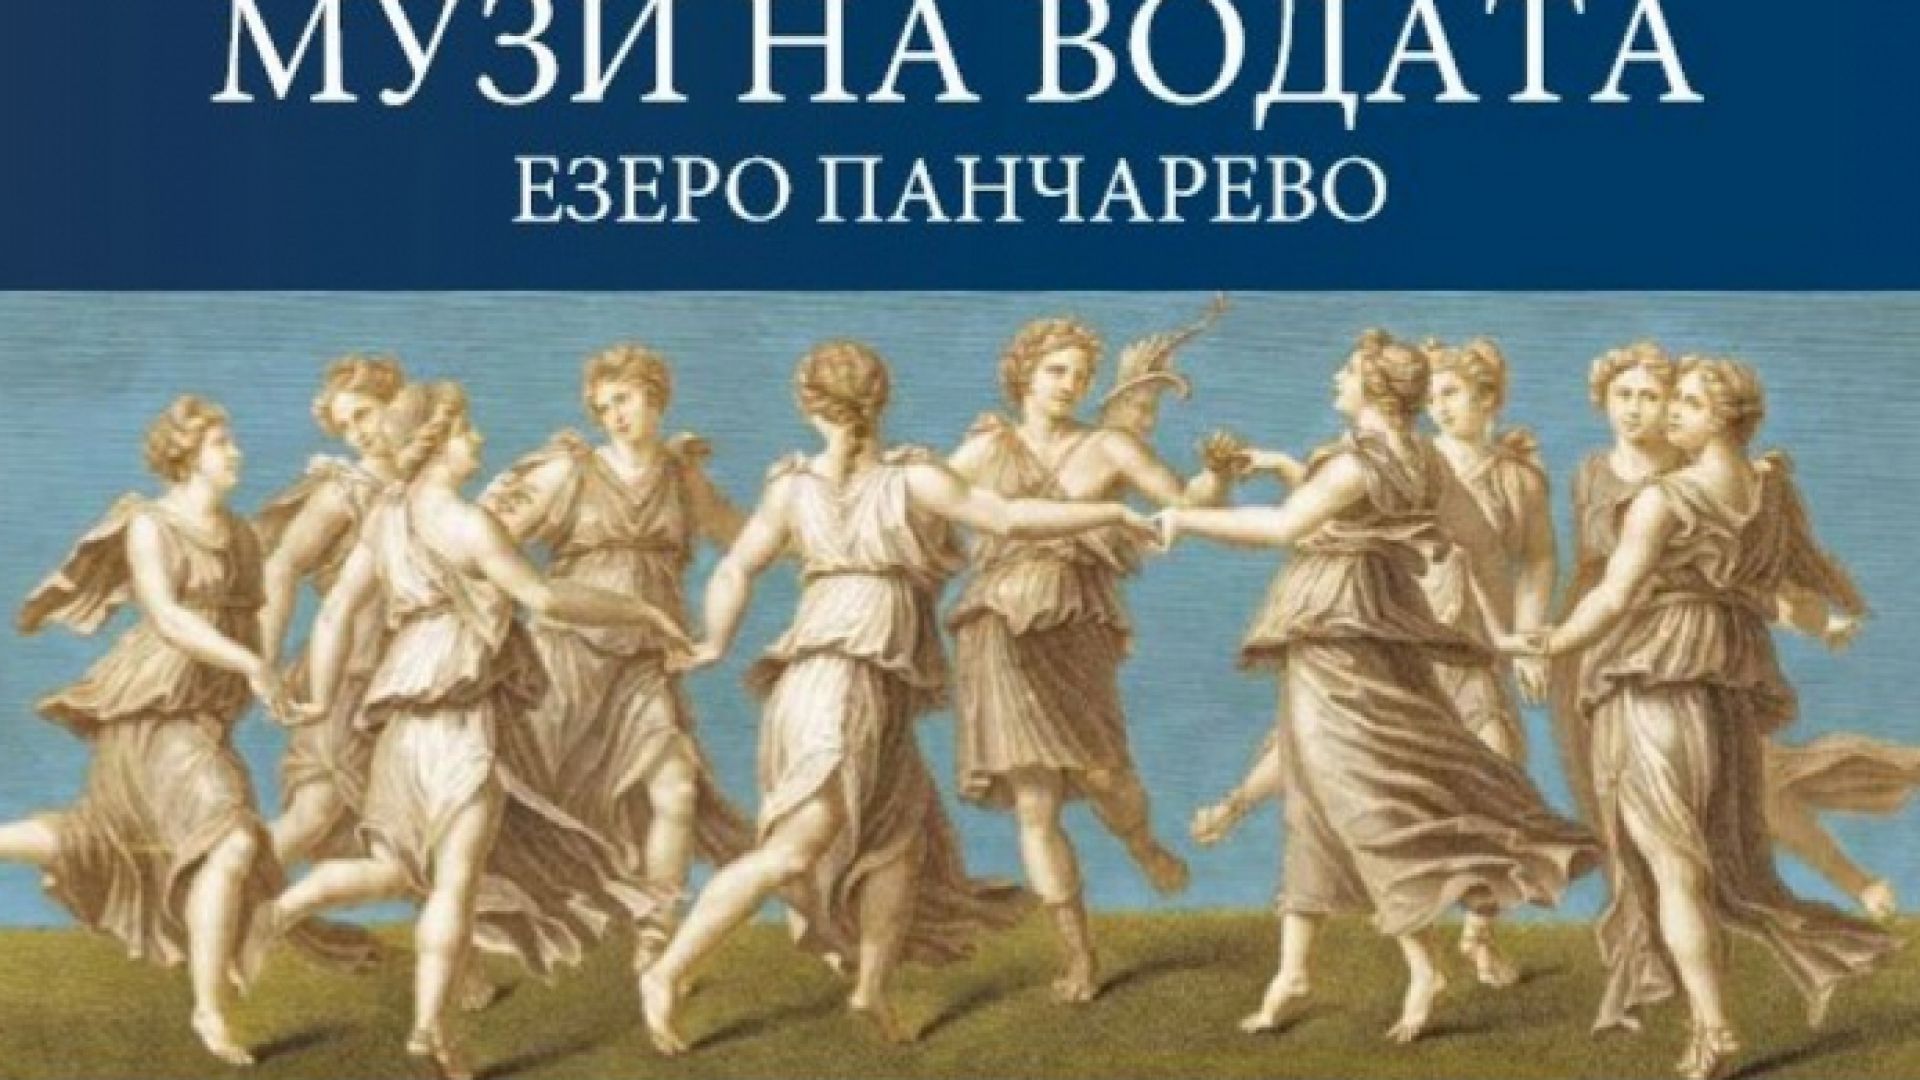 Софийската опера открива сцена на езерото Панчарево където ще покаже